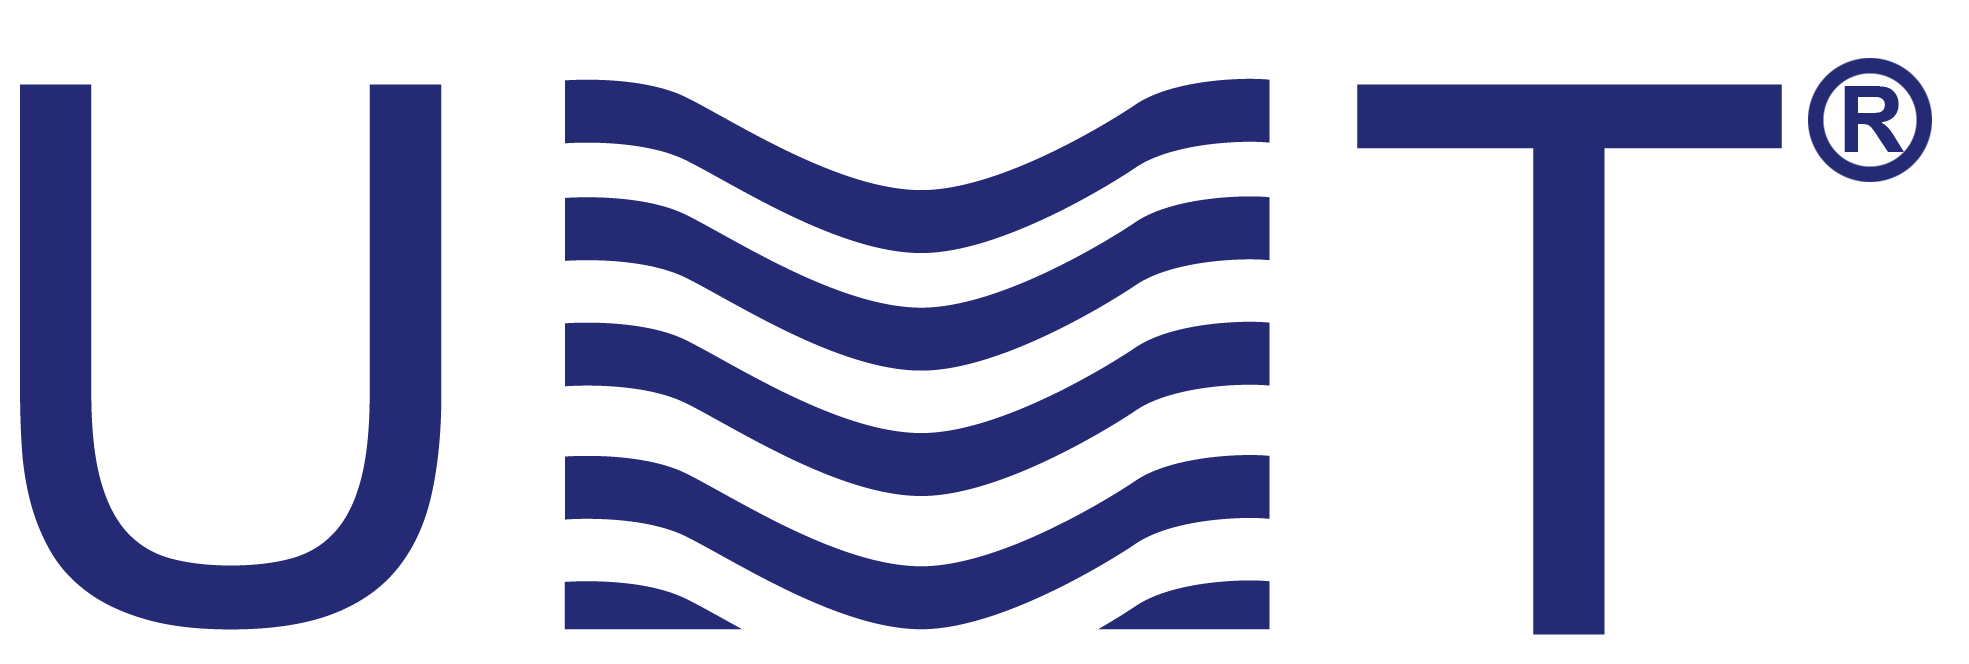 umt-tv logotype